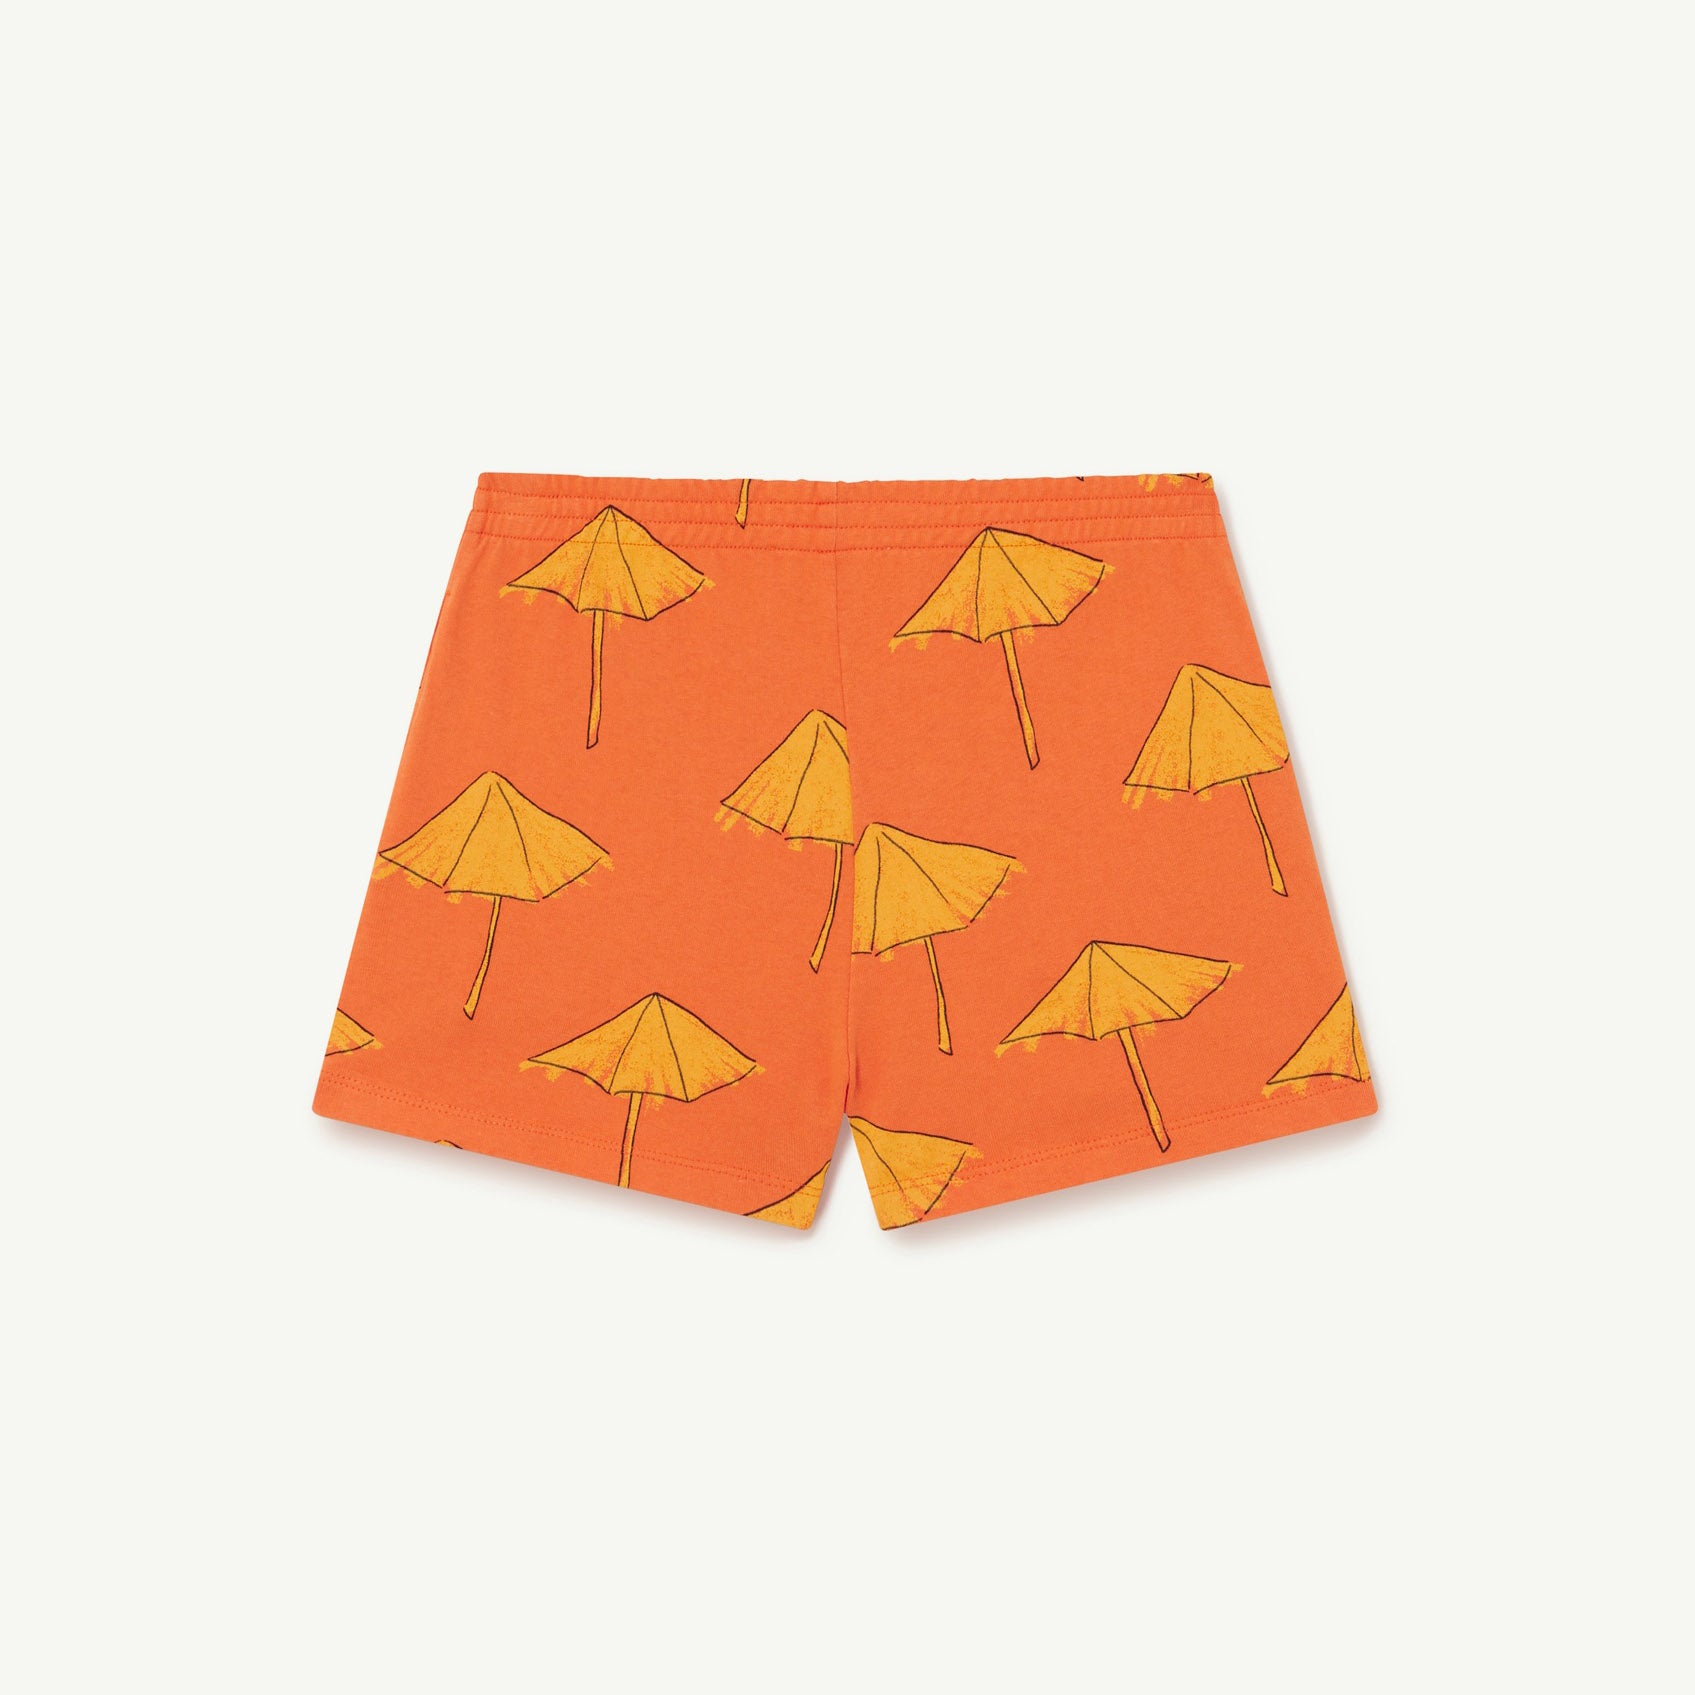 Boys & Girls Orange Printed Cotton Shorts